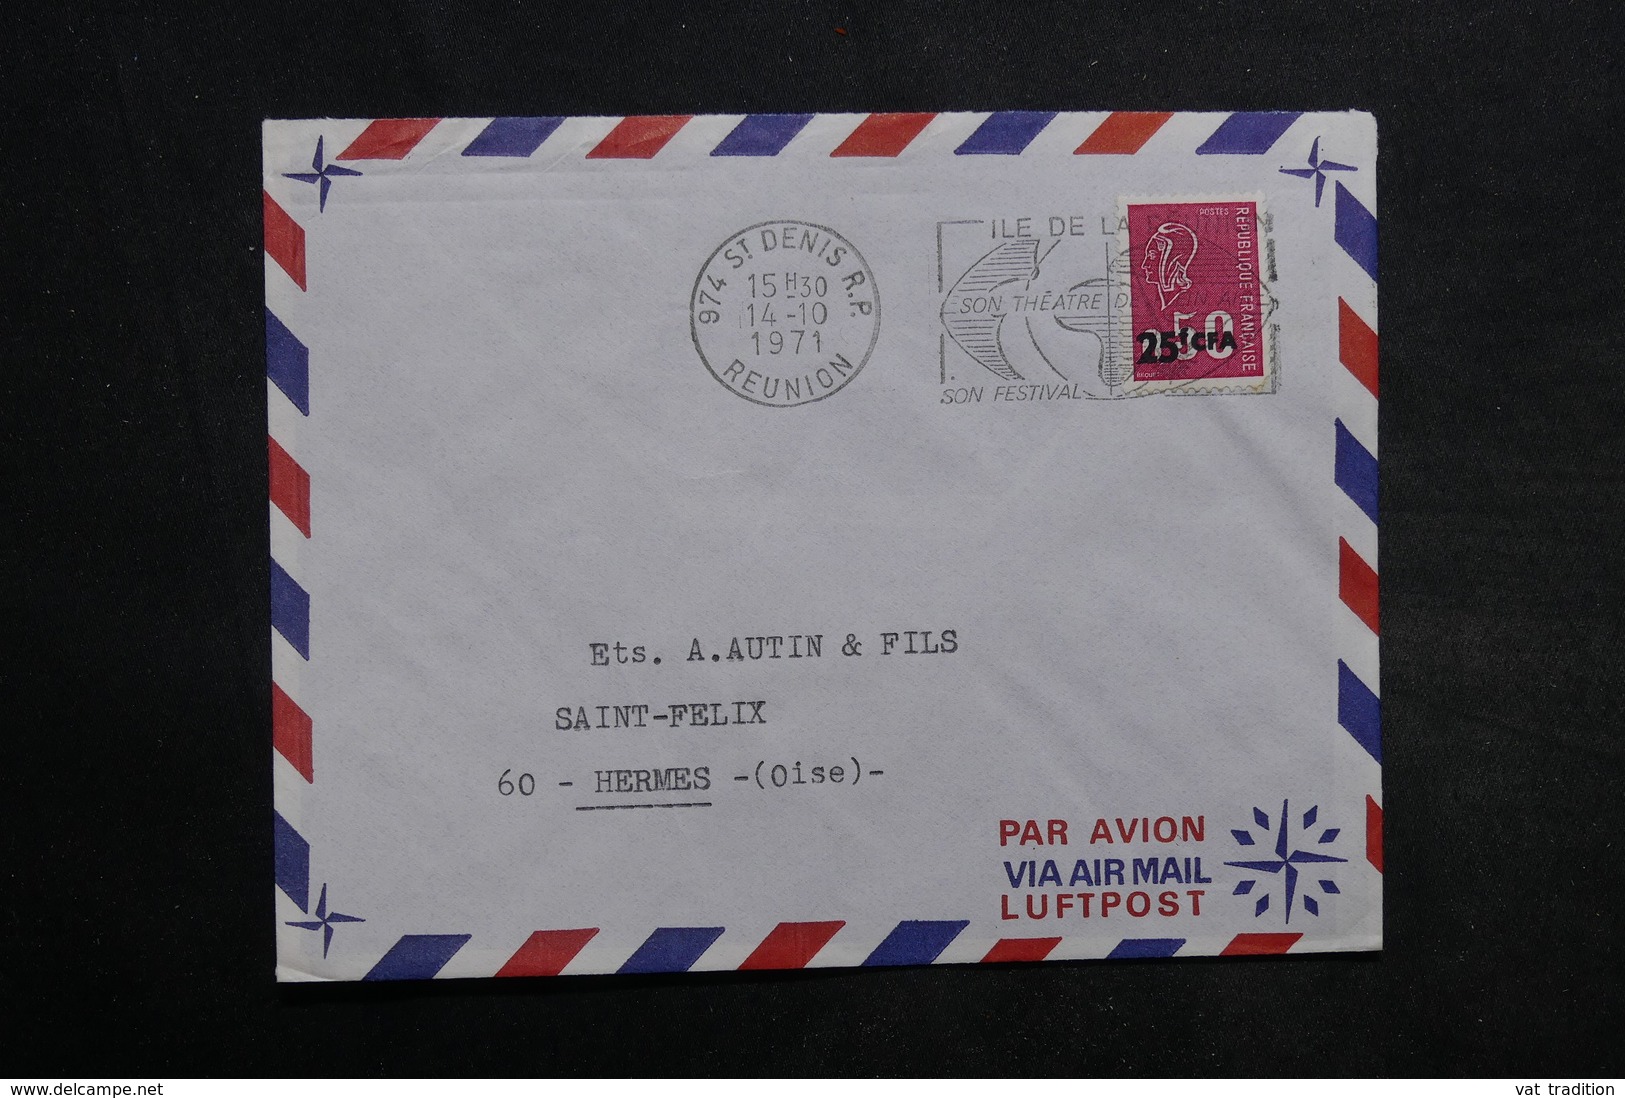 RÉUNION - Lot de 55 enveloppes , période 1970 - L 34243